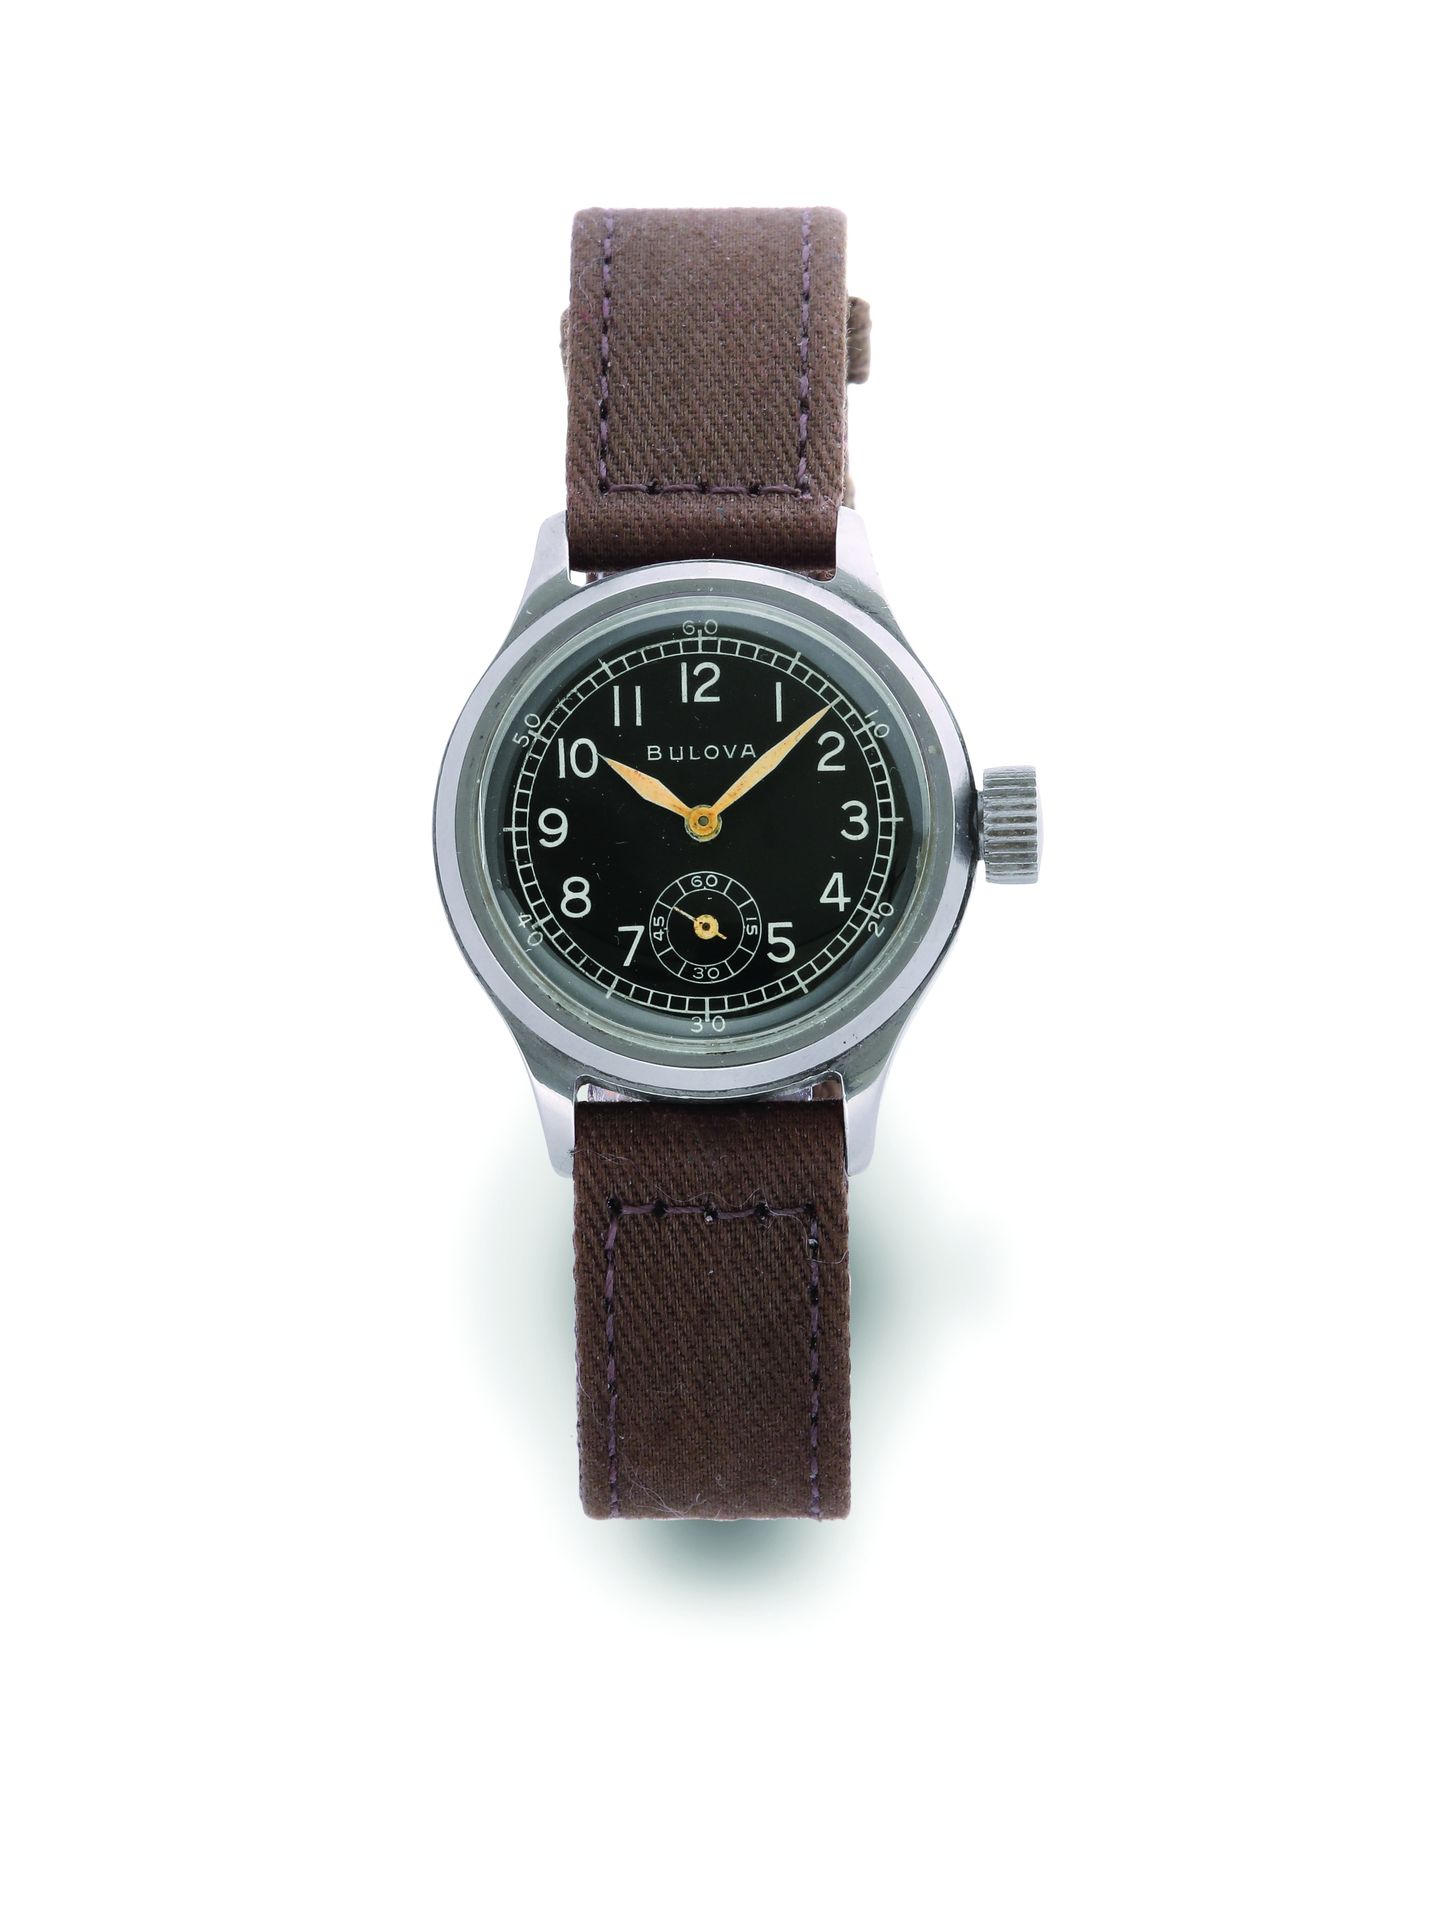 BULOVA Army
Sportuhr aus Metall mit mechanischem Uhrwerk - Rundes Gehäuse, glatt&hellip;